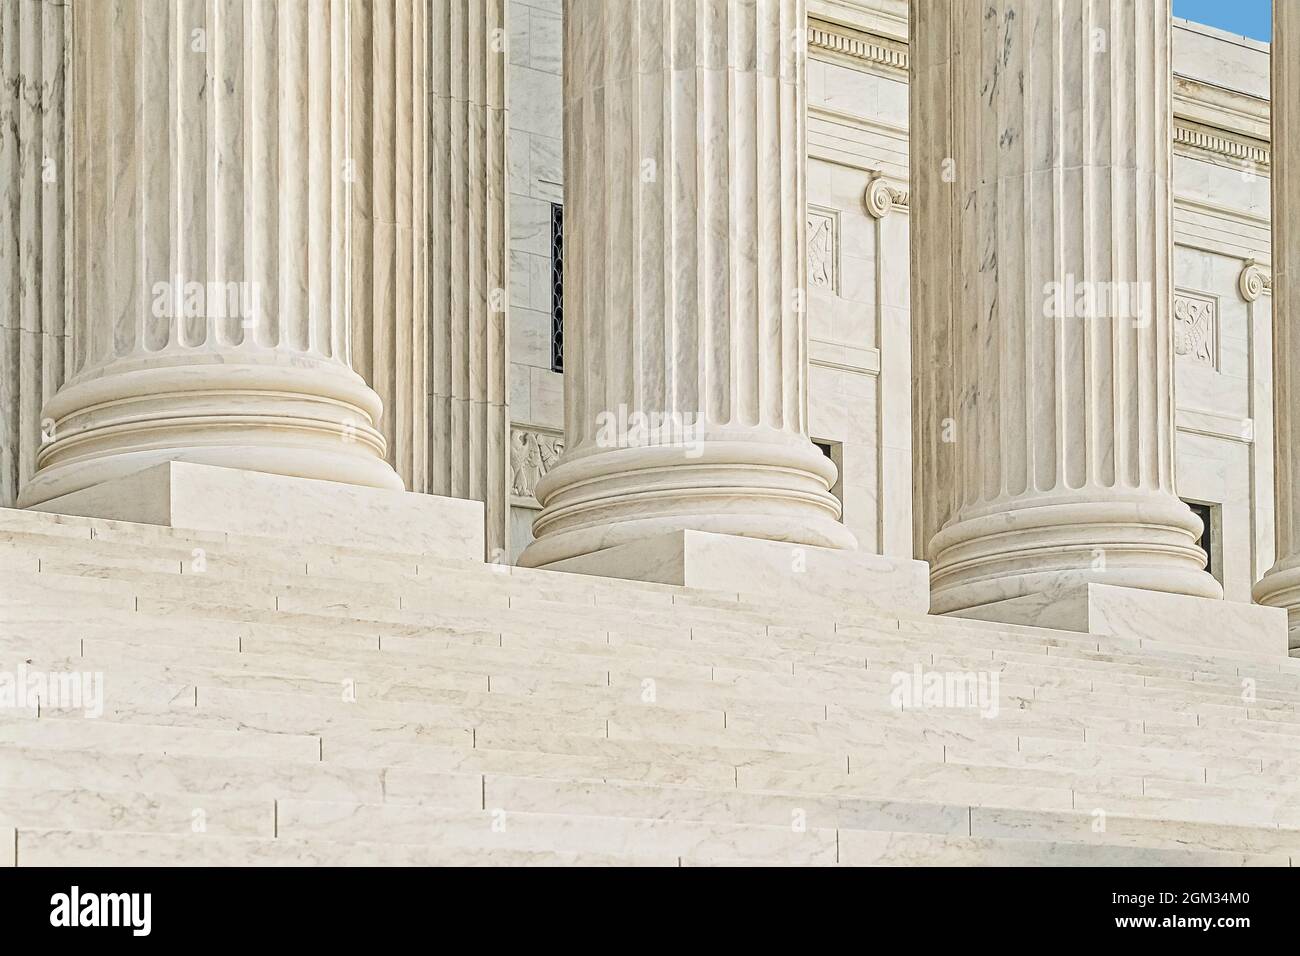 Corte Suprema degli Stati Uniti a Washington DC. La più alta corte federale degli Stati Uniti con il suo stile architettonico neoclassico. Questo im Foto Stock